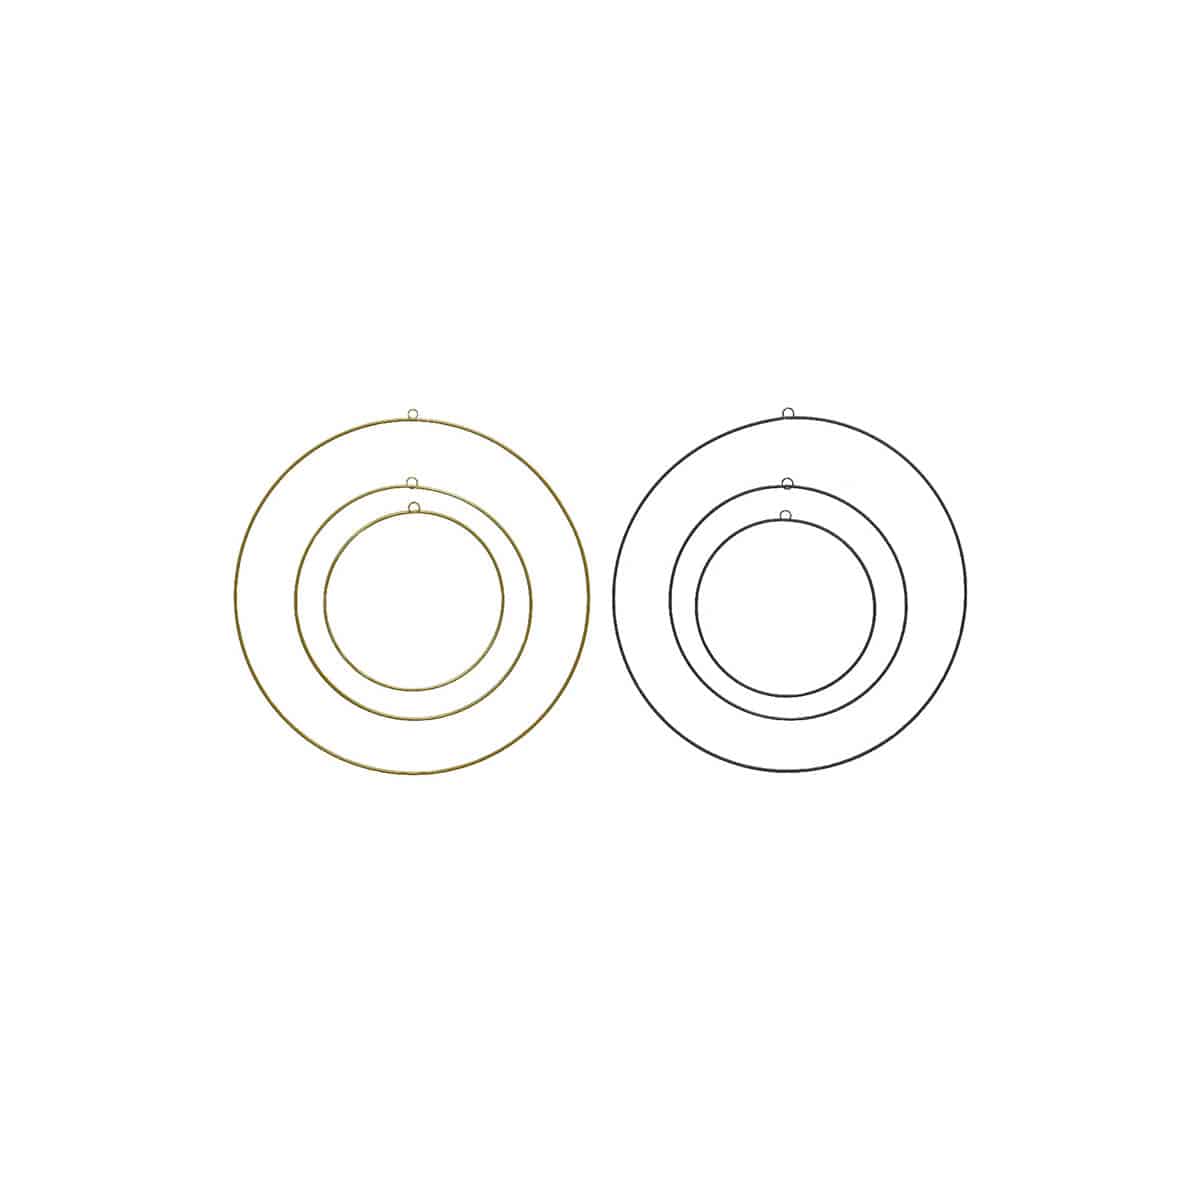 Metallringer med oppheng i sett av 3 stk. Diameter 30 cm, 40 cm og 50 cm. Velg mellom sort eller gull farge.